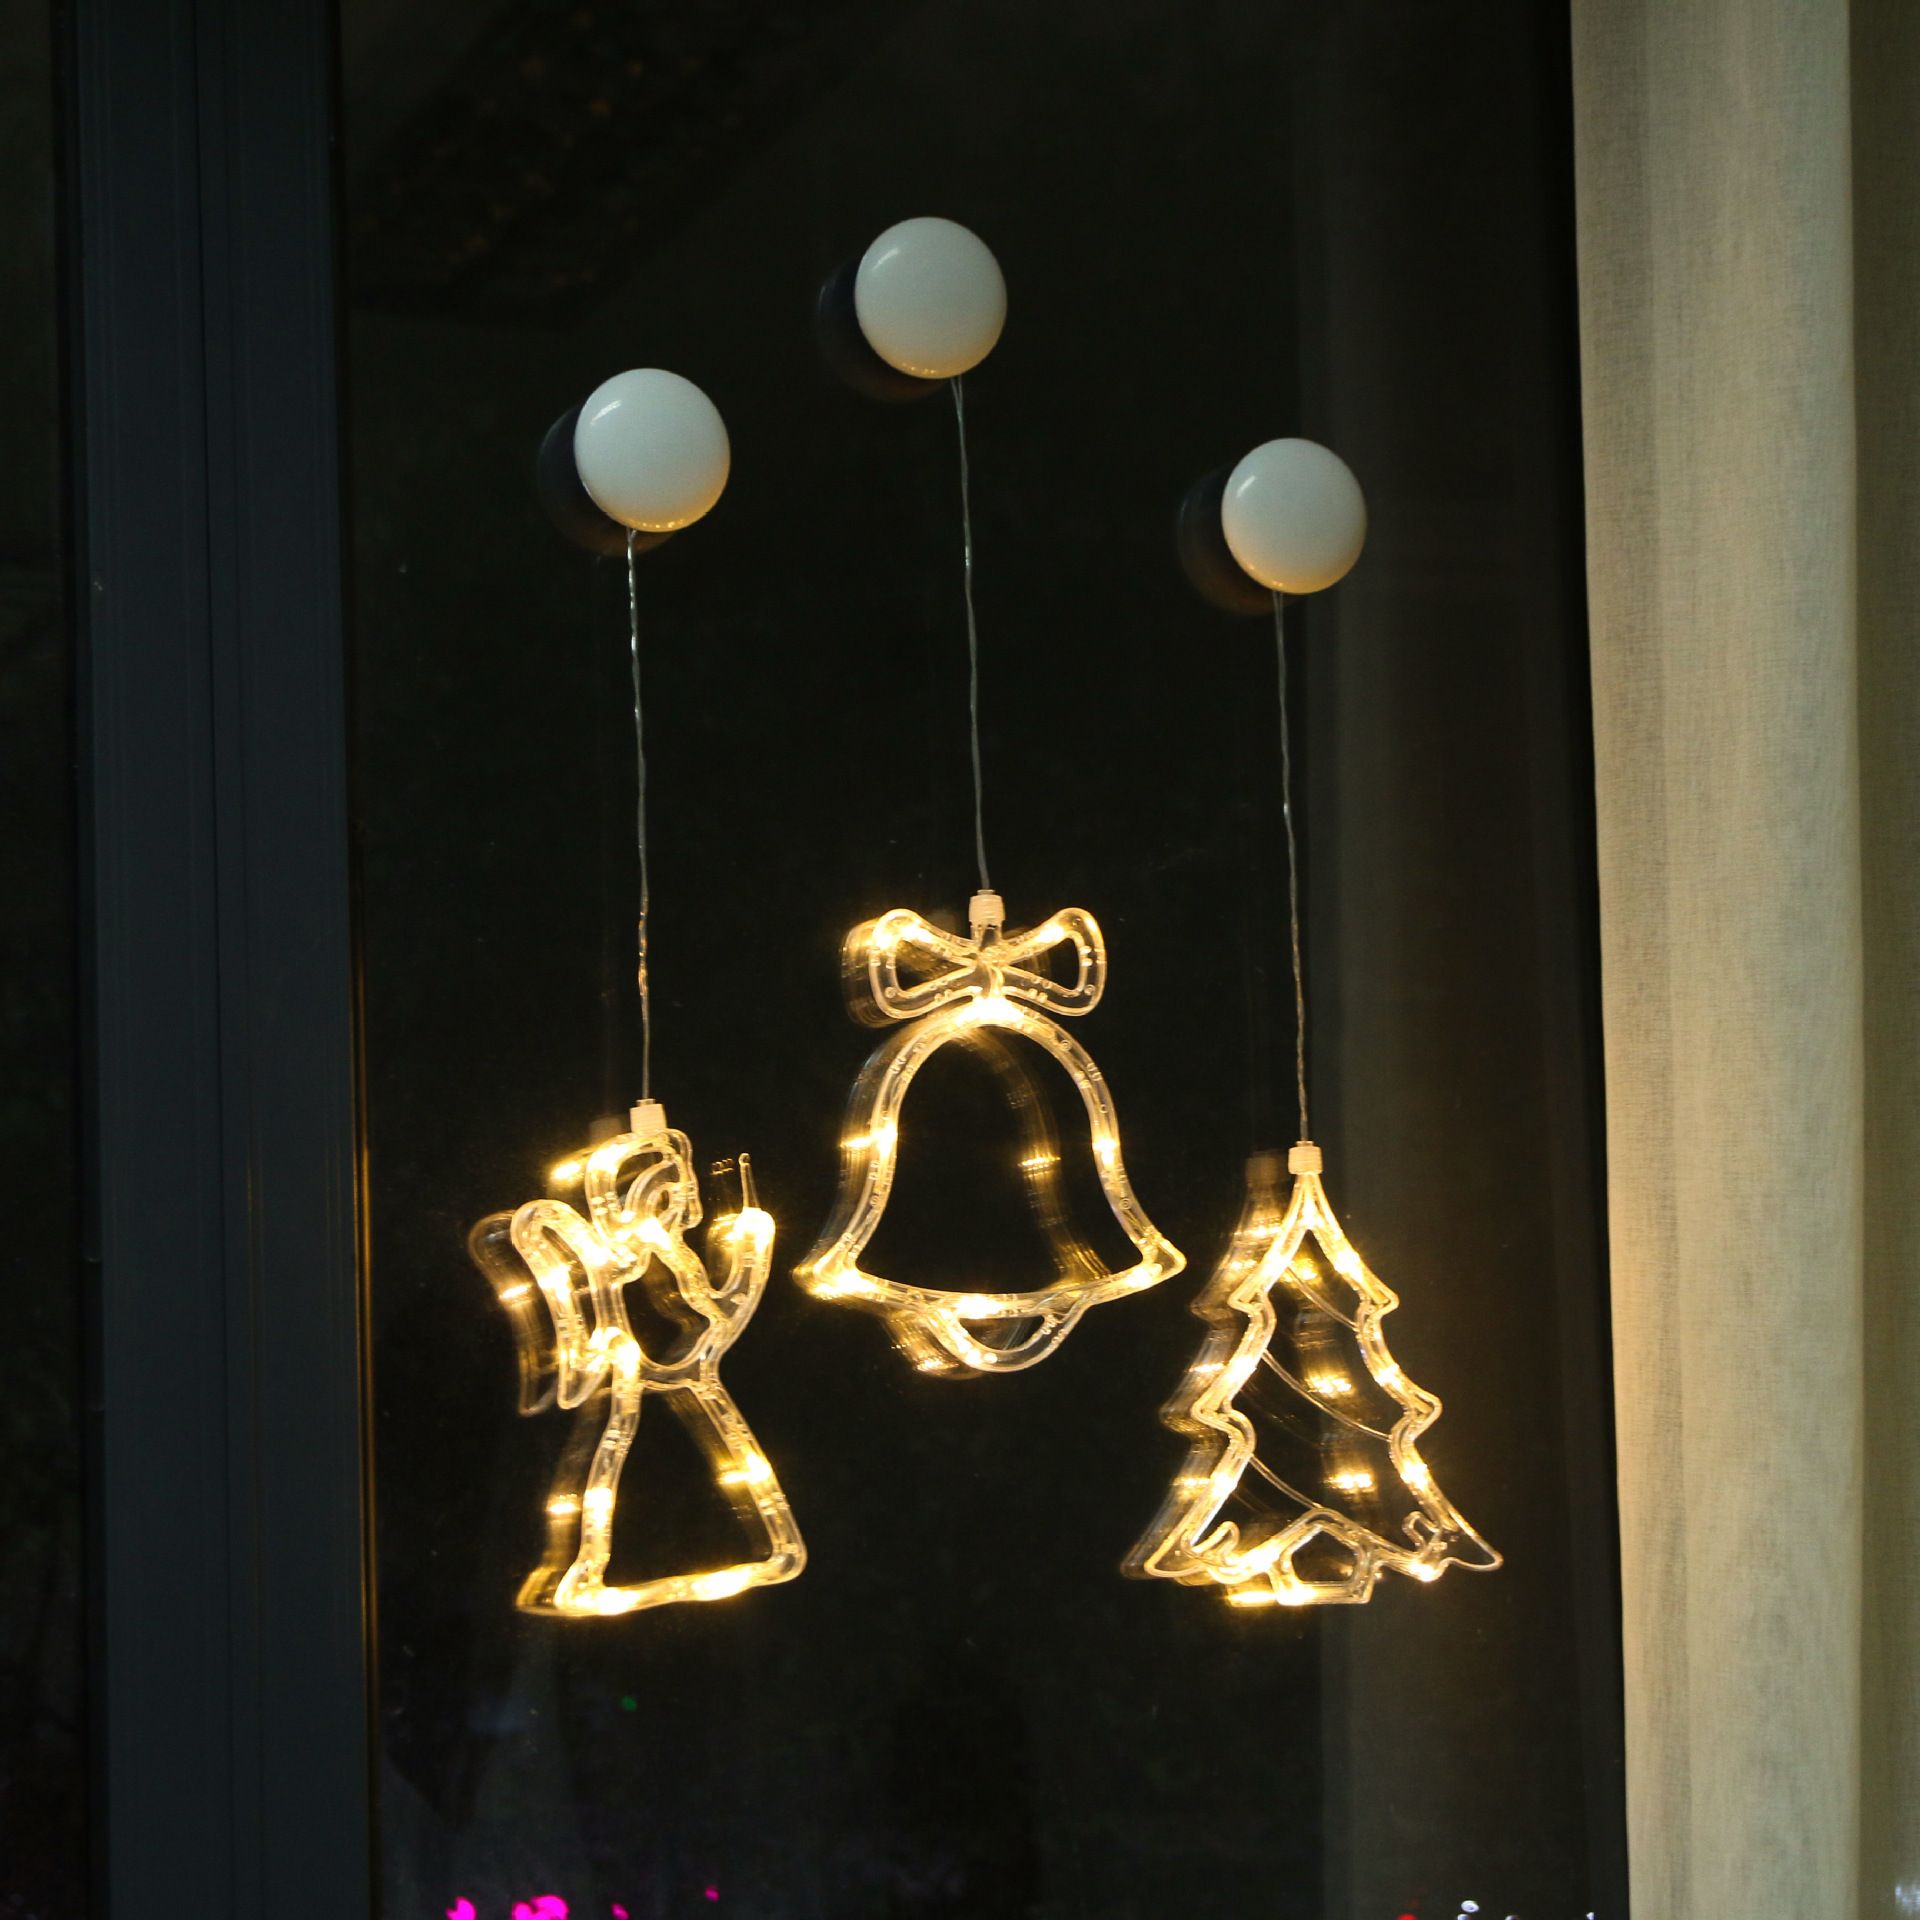 LED圣诞灯 圣诞铃铛吸盘灯 房间橱窗圣诞树装饰灯 五角星吸盘灯